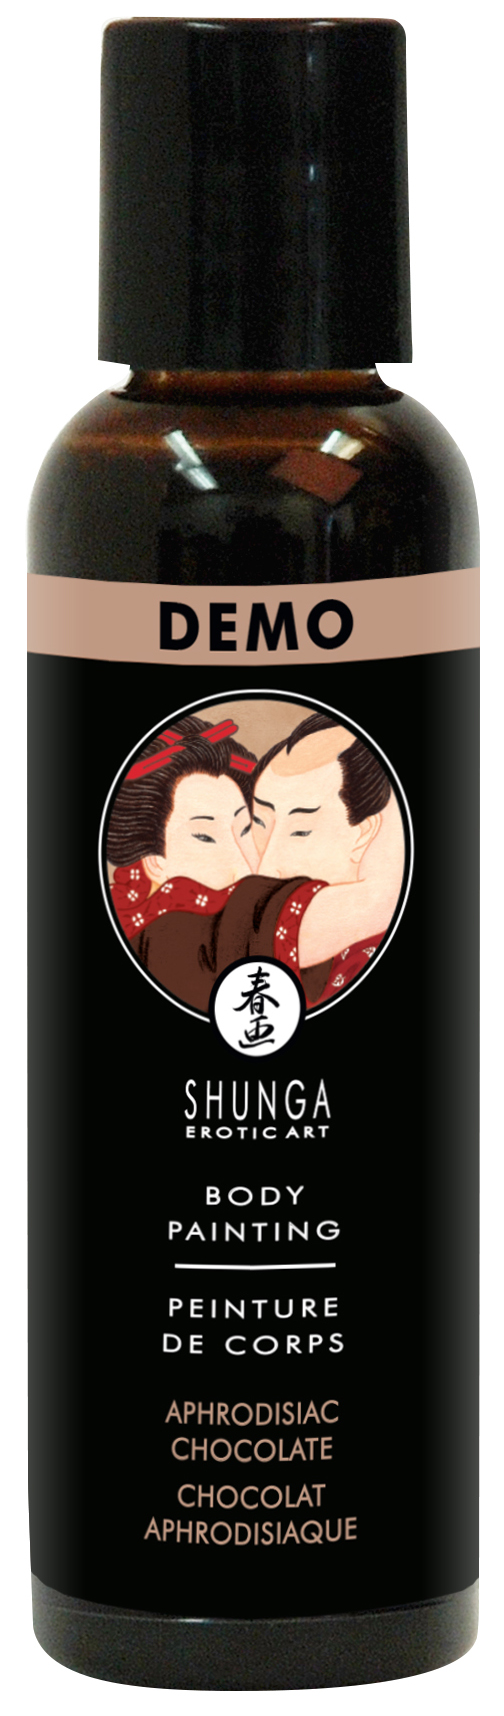 SHUNGA Chocolate Body Painting 60ml TESTER